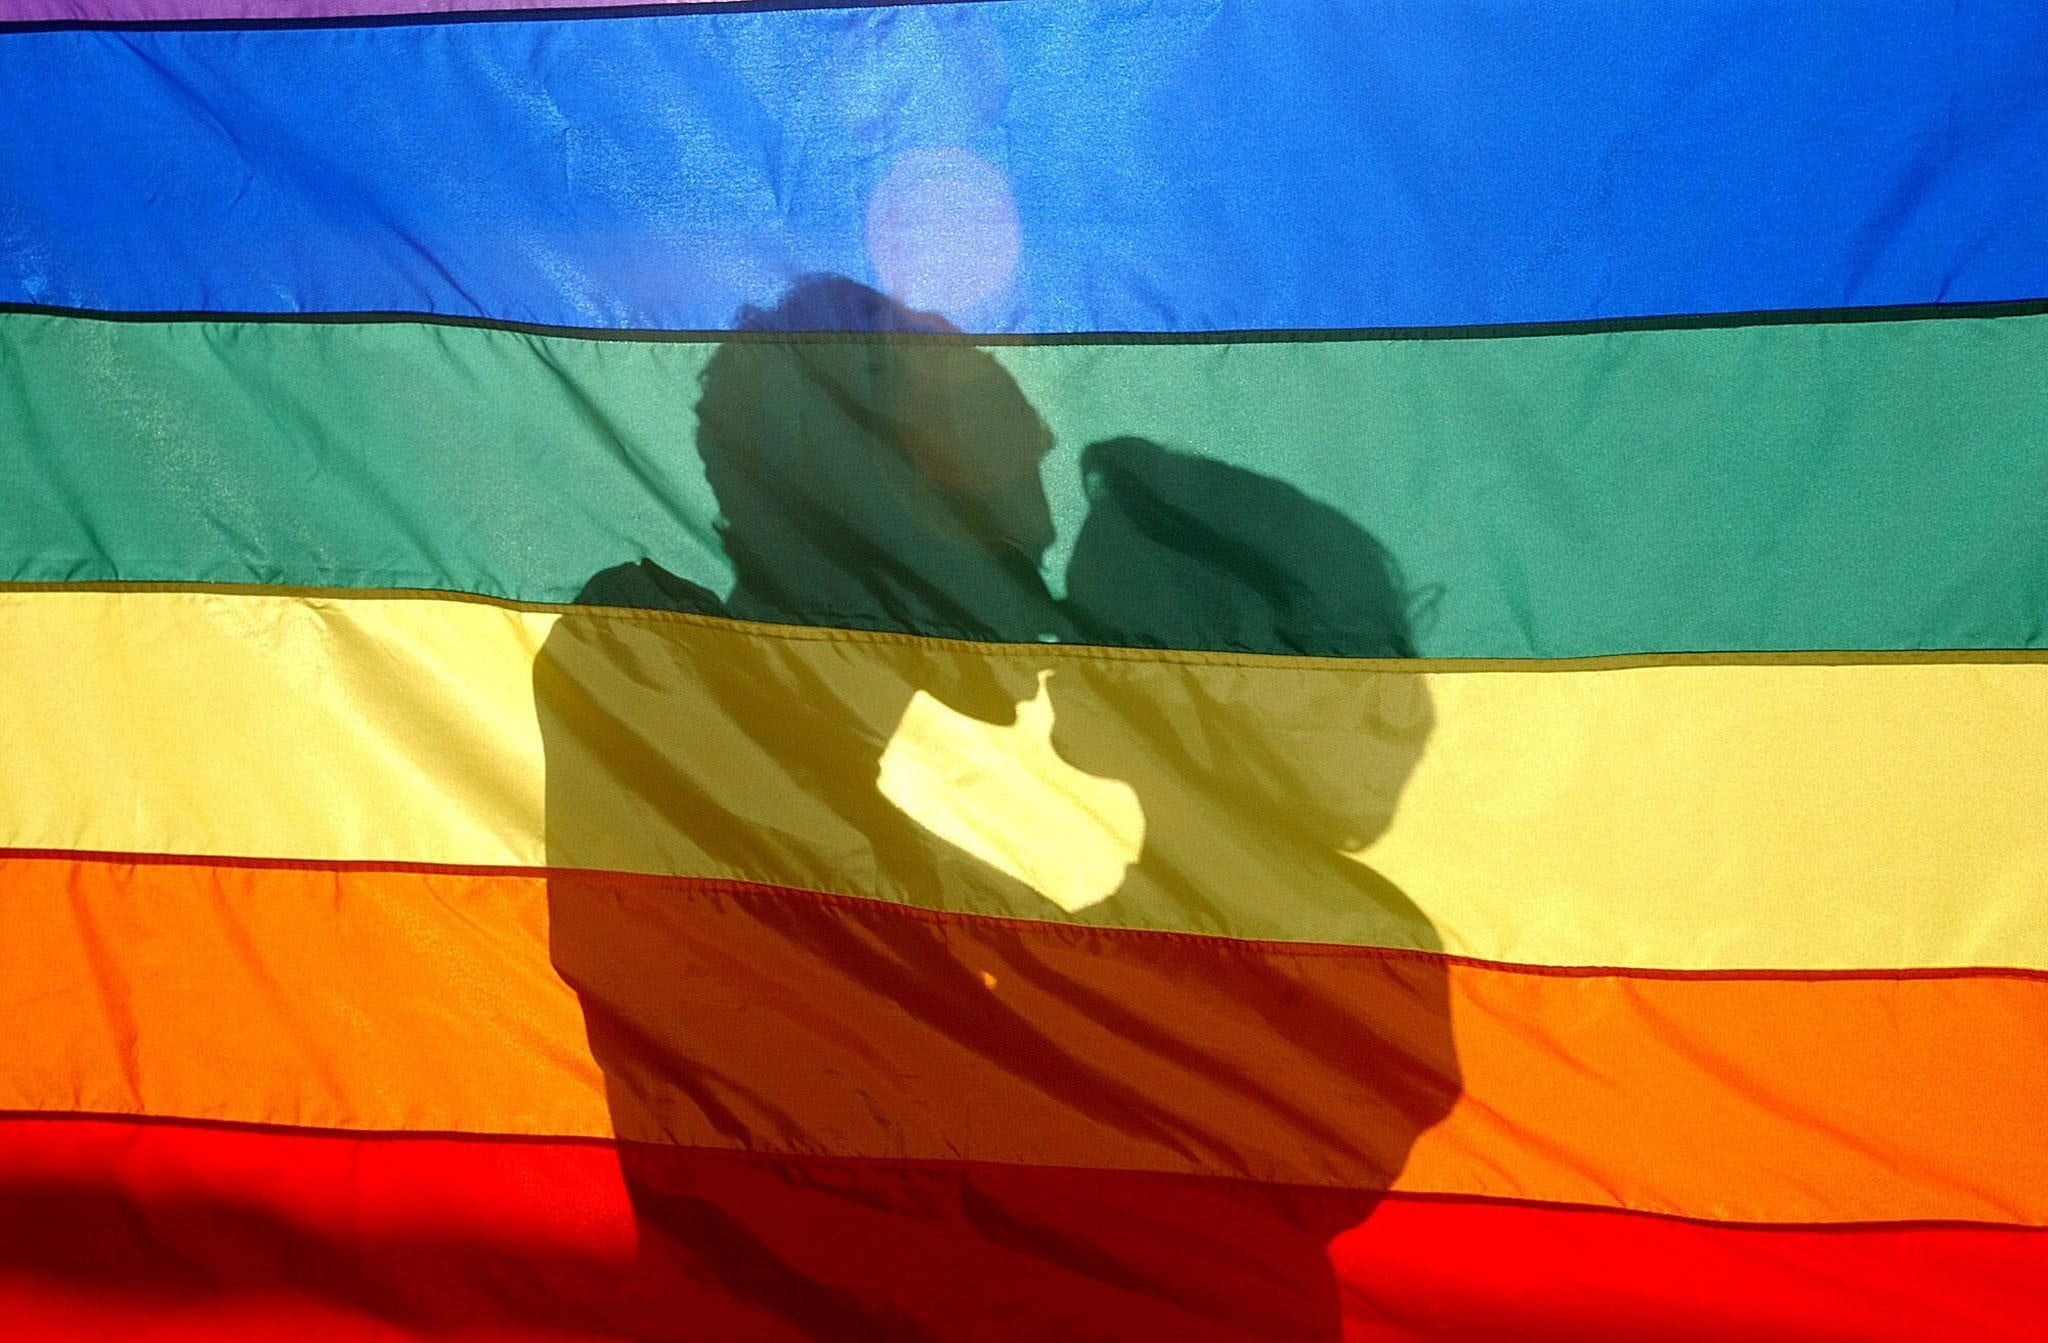 Al meer dan drie jaar wachten op nationaal actieplan tegen homo- en transfobie: "Het wordt lachwekkend"